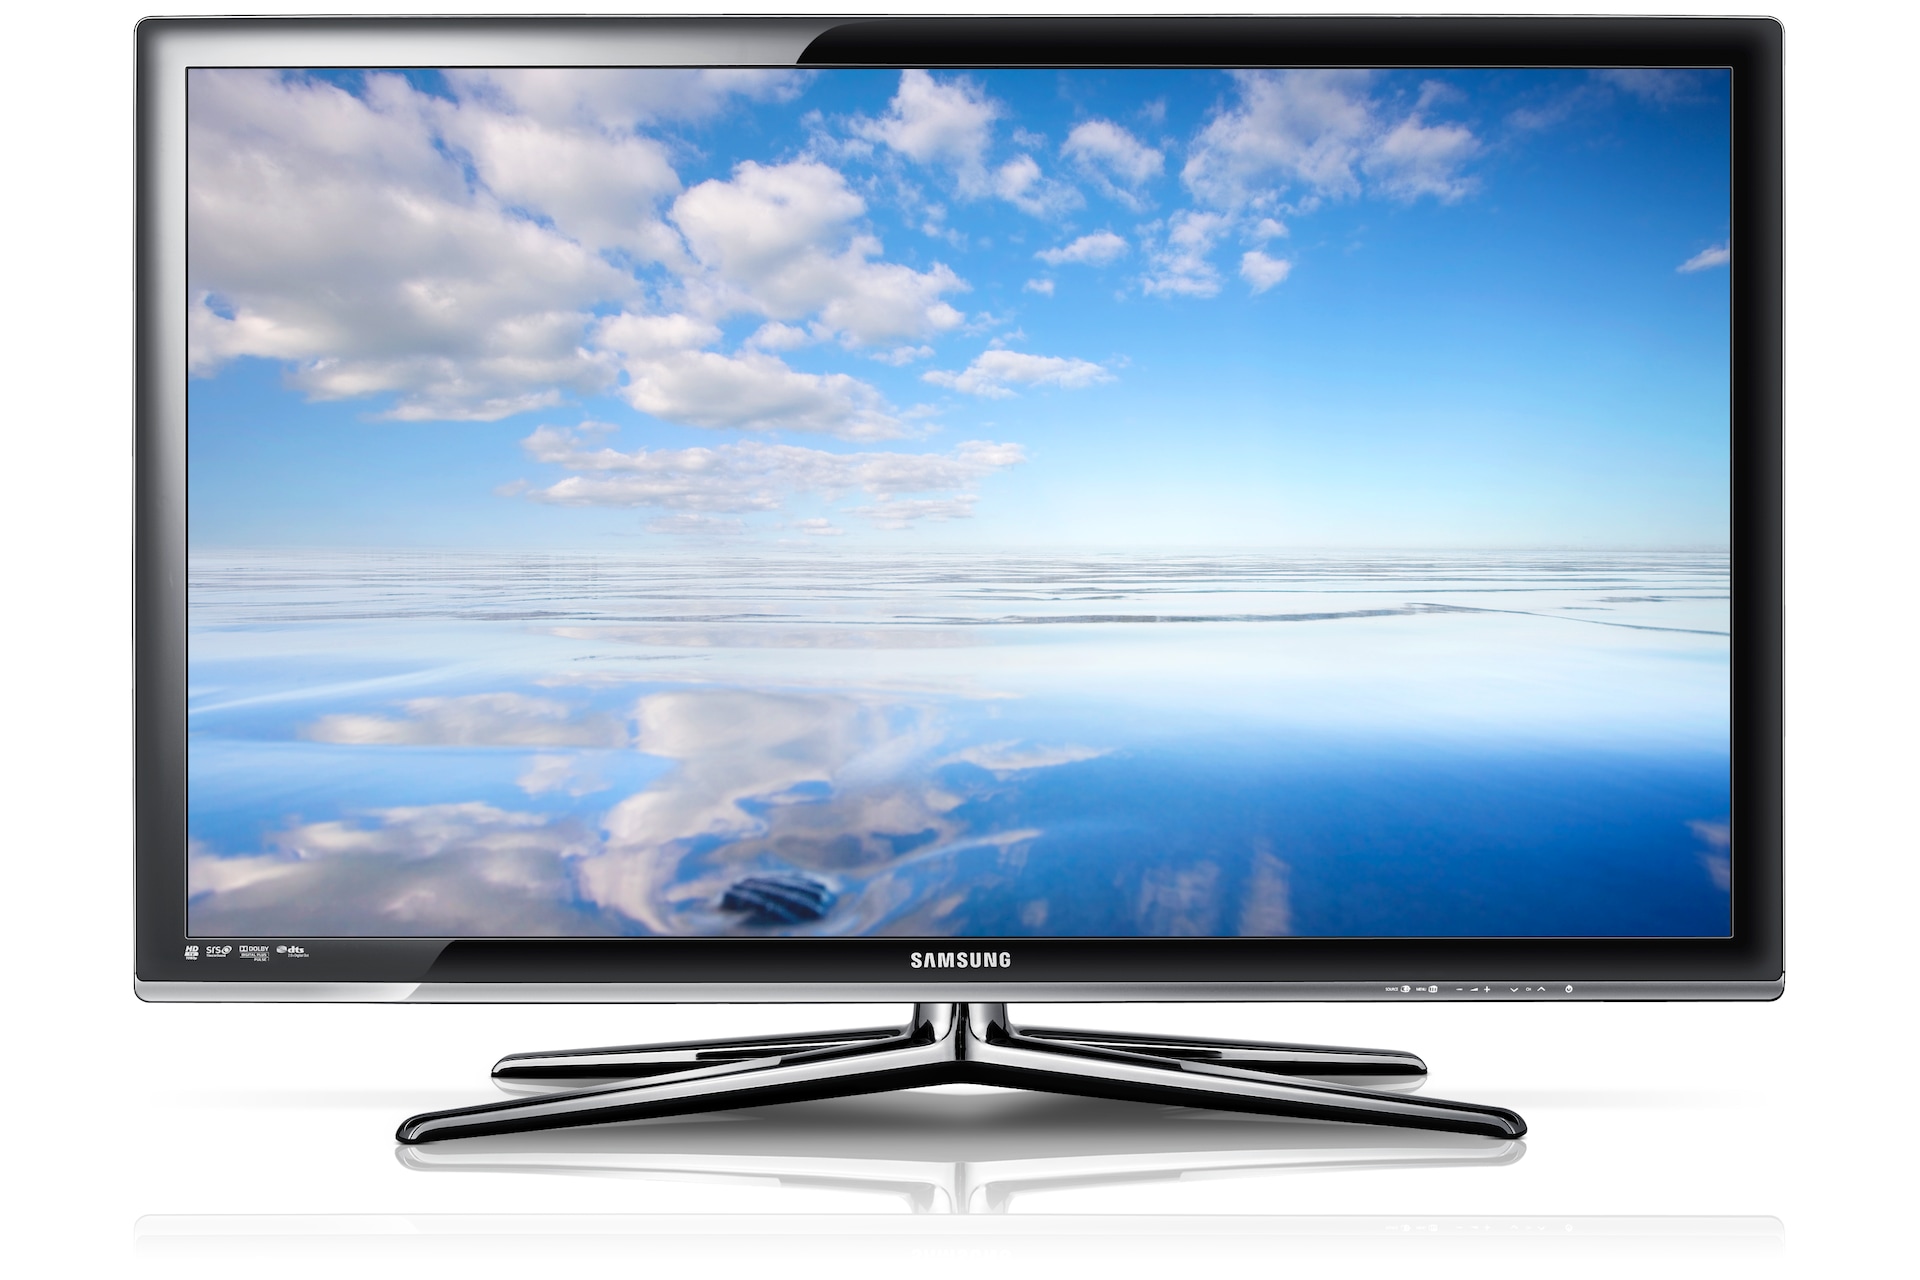 samsung smart tv 40 inch led 3d